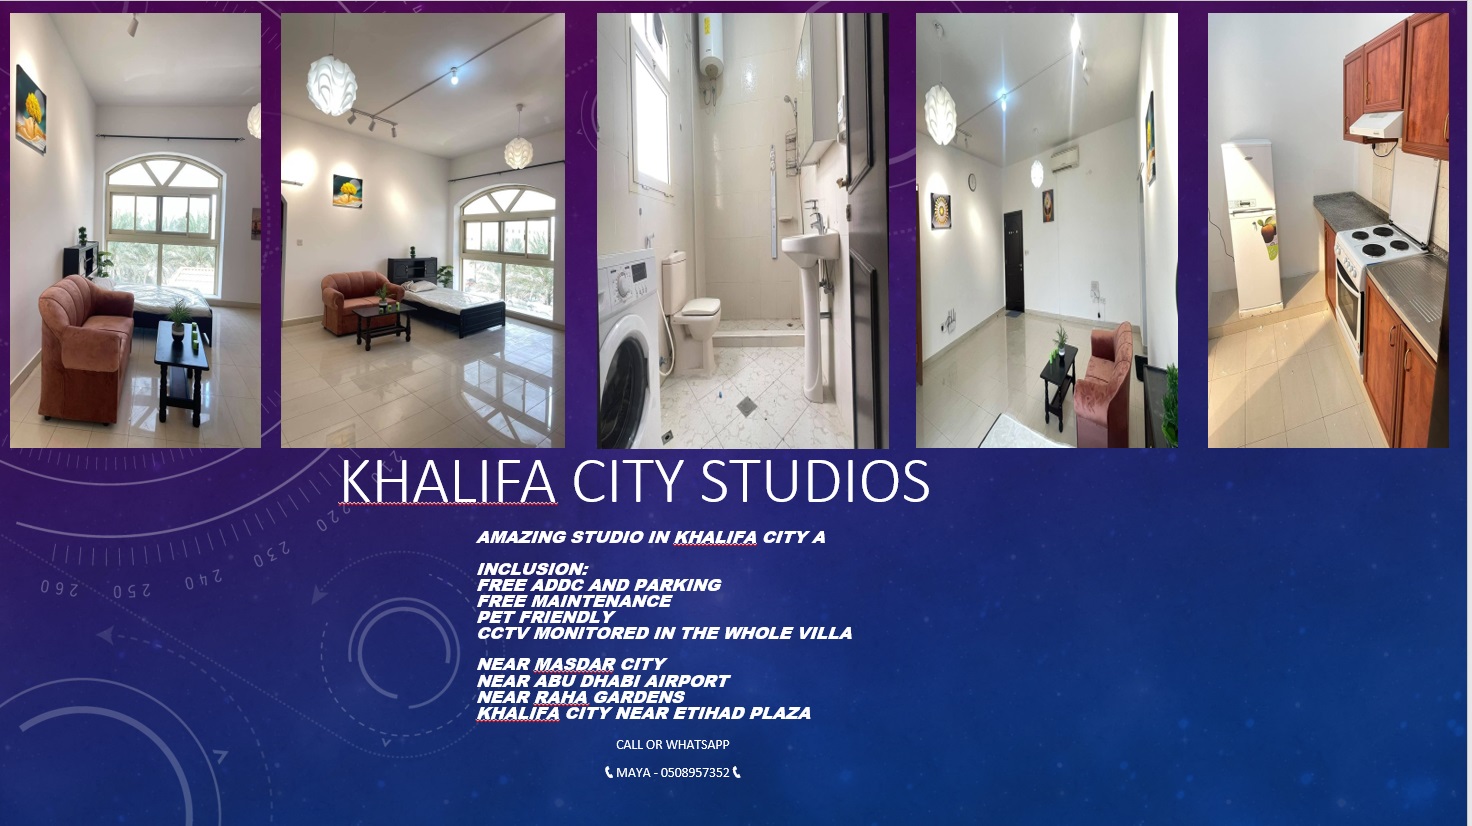 Studios At Khalifa City A